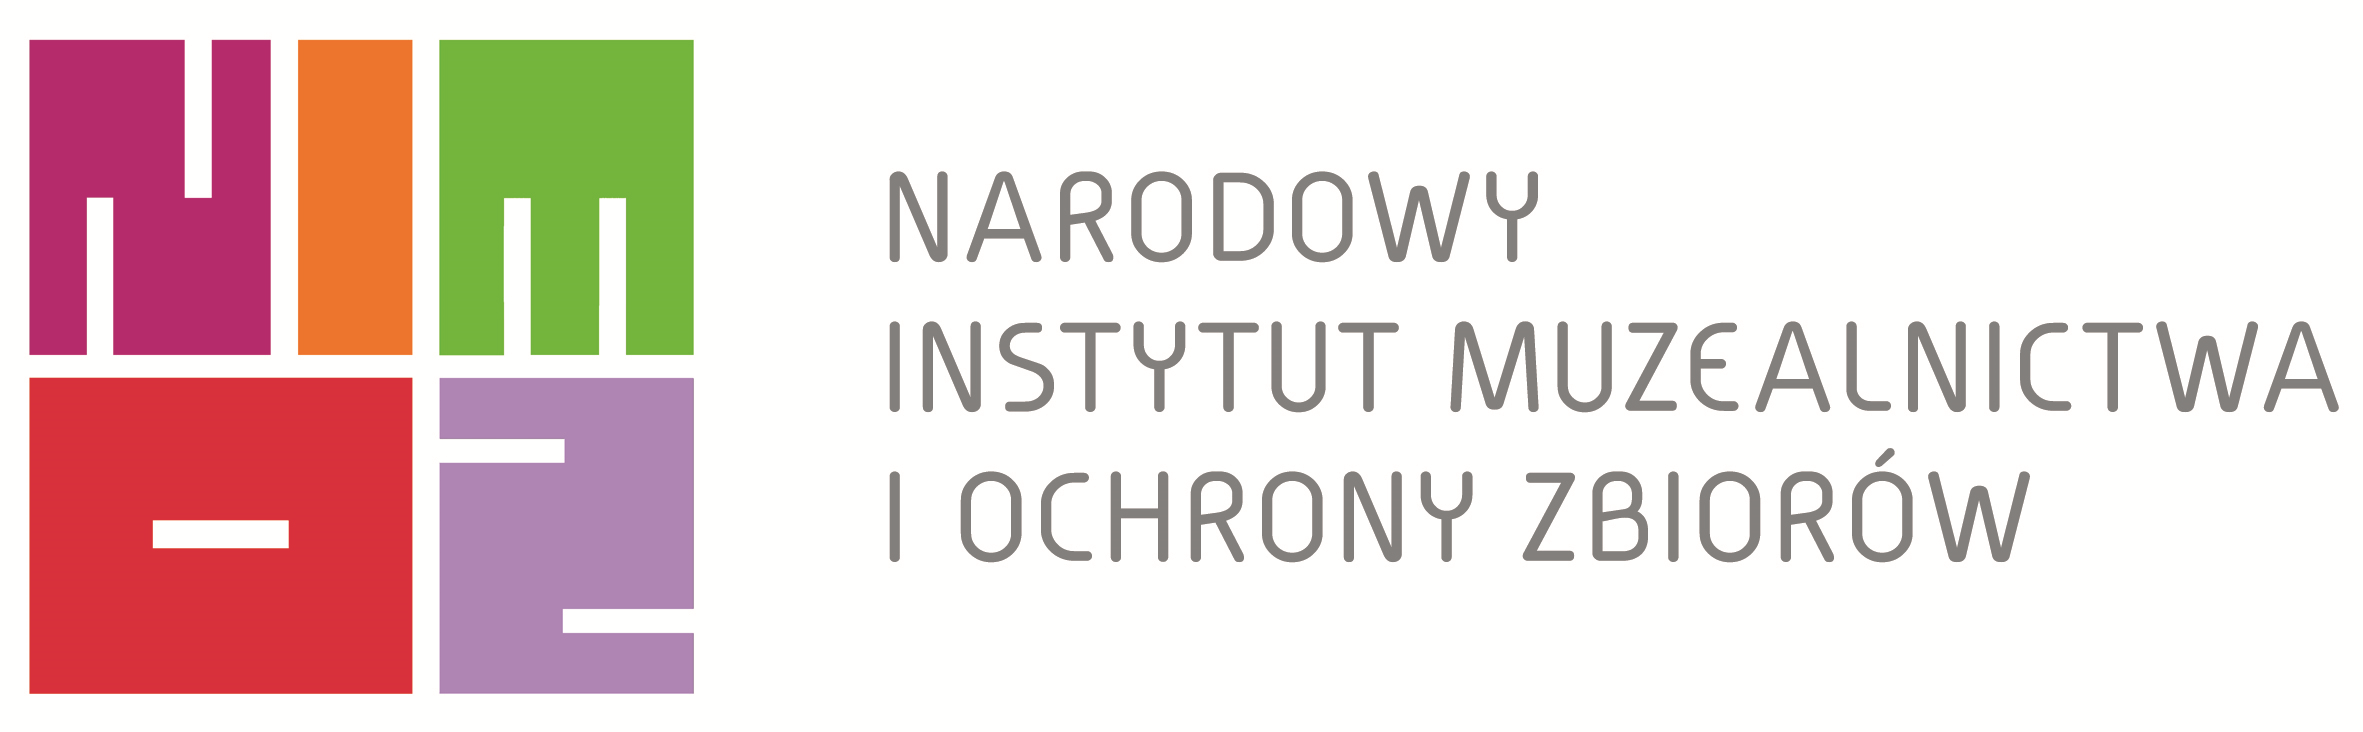 Narodowy Instytut Muzealnictwa i Ochrony Zbiorów